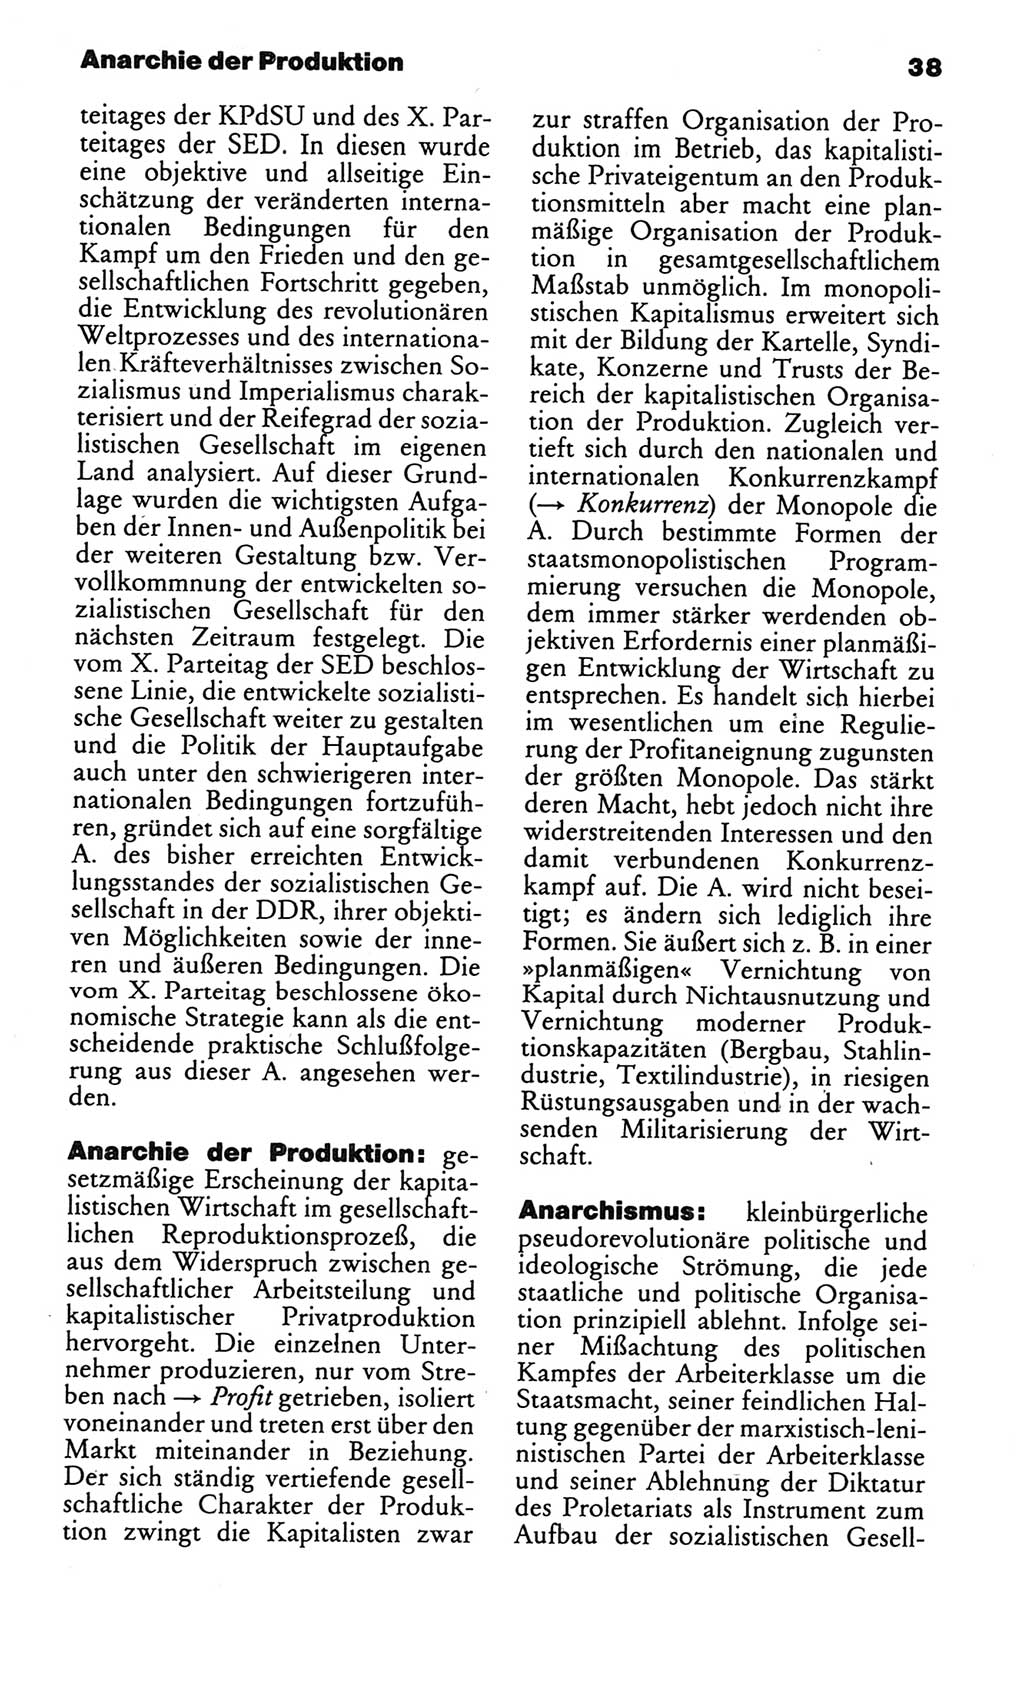 Kleines politisches Wörterbuch [Deutsche Demokratische Republik (DDR)] 1986, Seite 38 (Kl. pol. Wb. DDR 1986, S. 38)